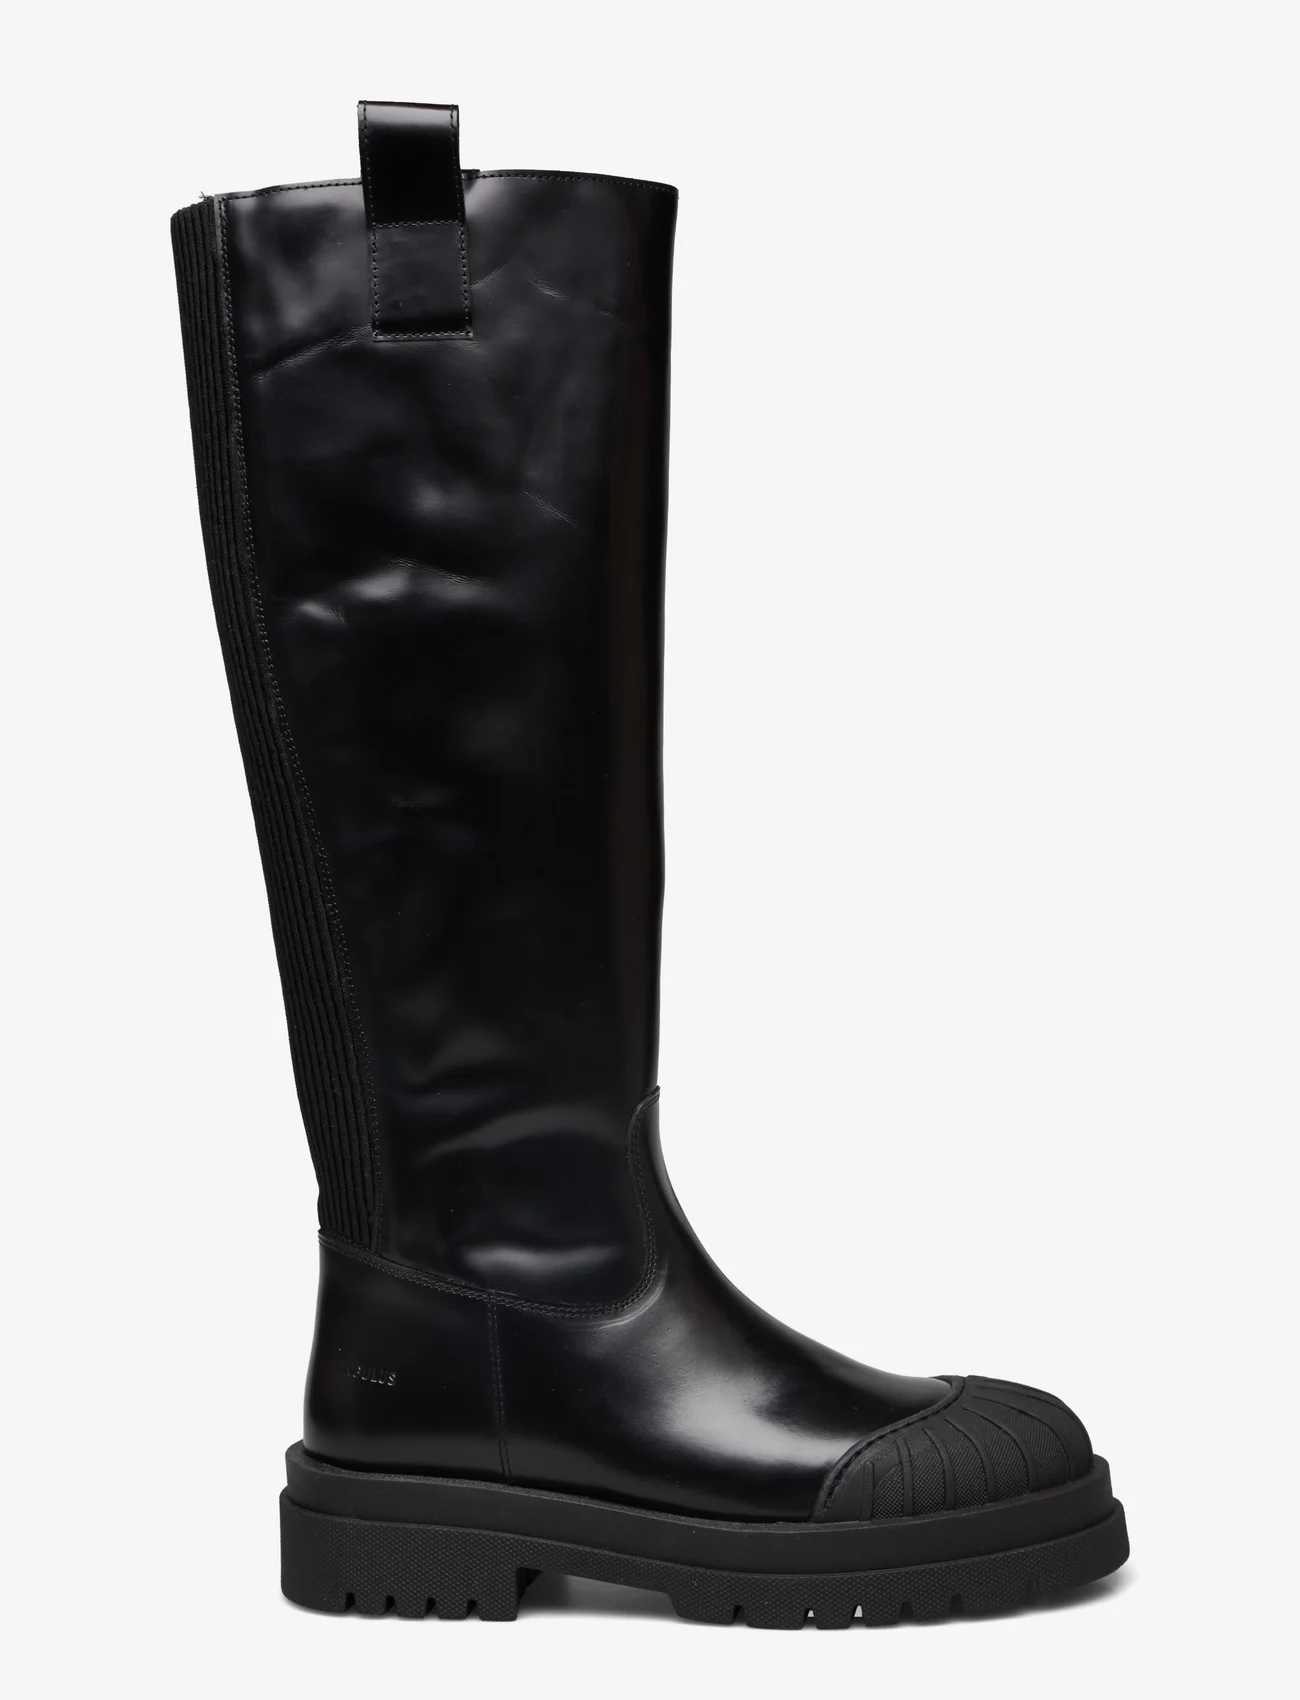 ANGULUS - Boots - flat - pika säärega saapad - 1425/019 black/black - 1